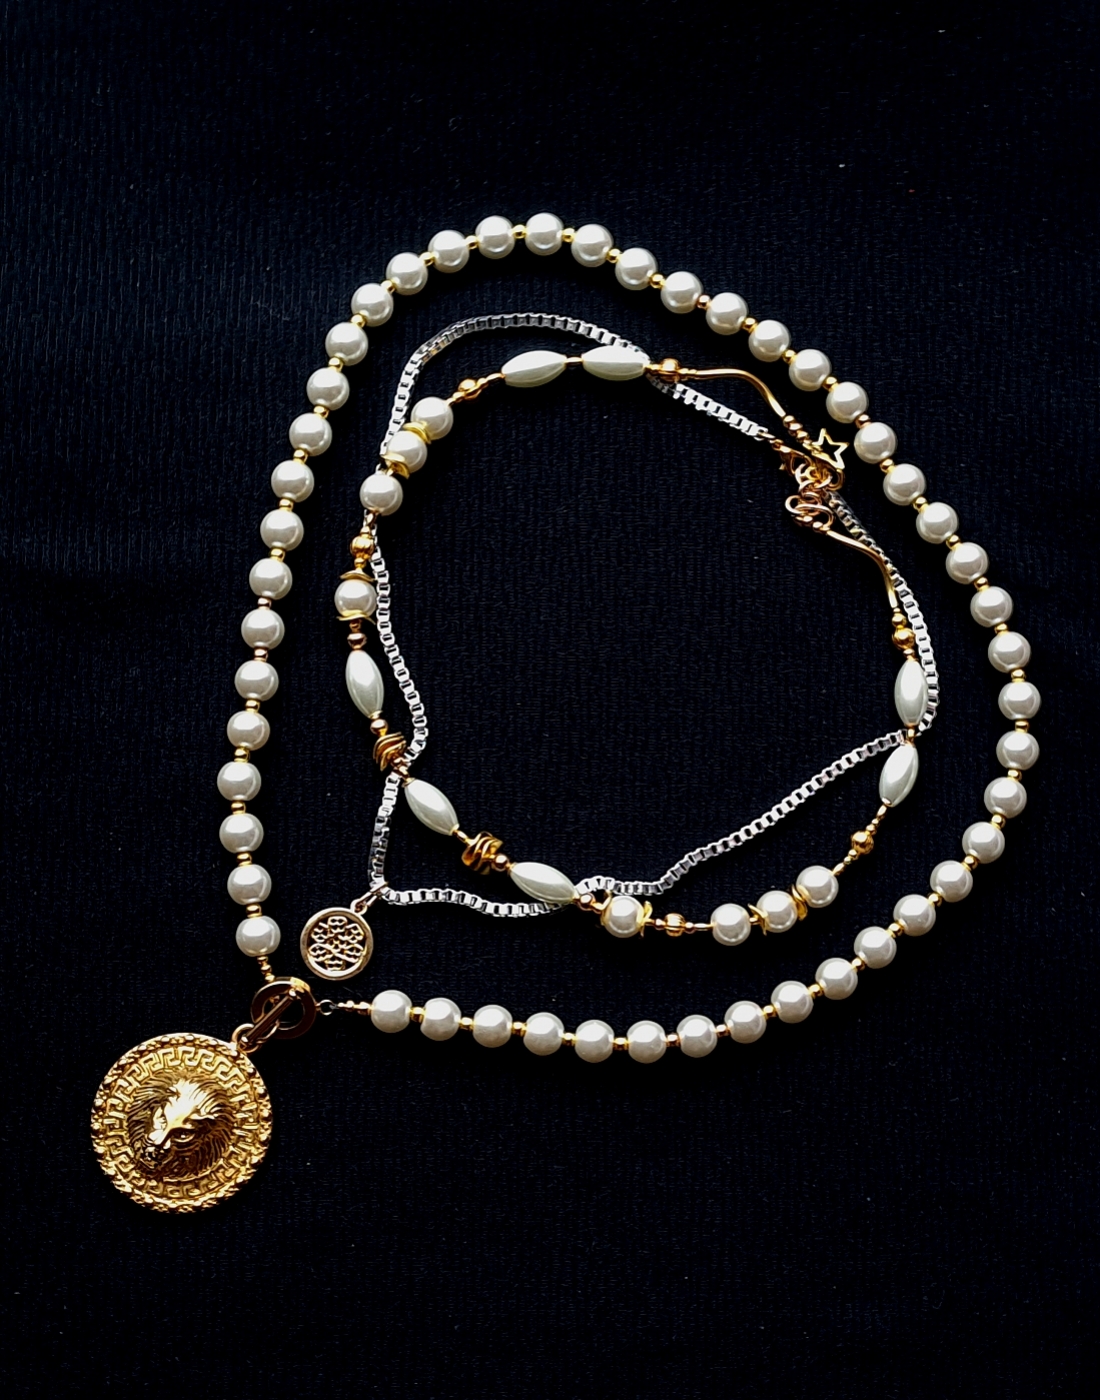 kompozycja 3 oddzielnych naszyjników w duchu bardzo modnej biżuterii Boho z mixu szklanych pereł i ozdób typu bali